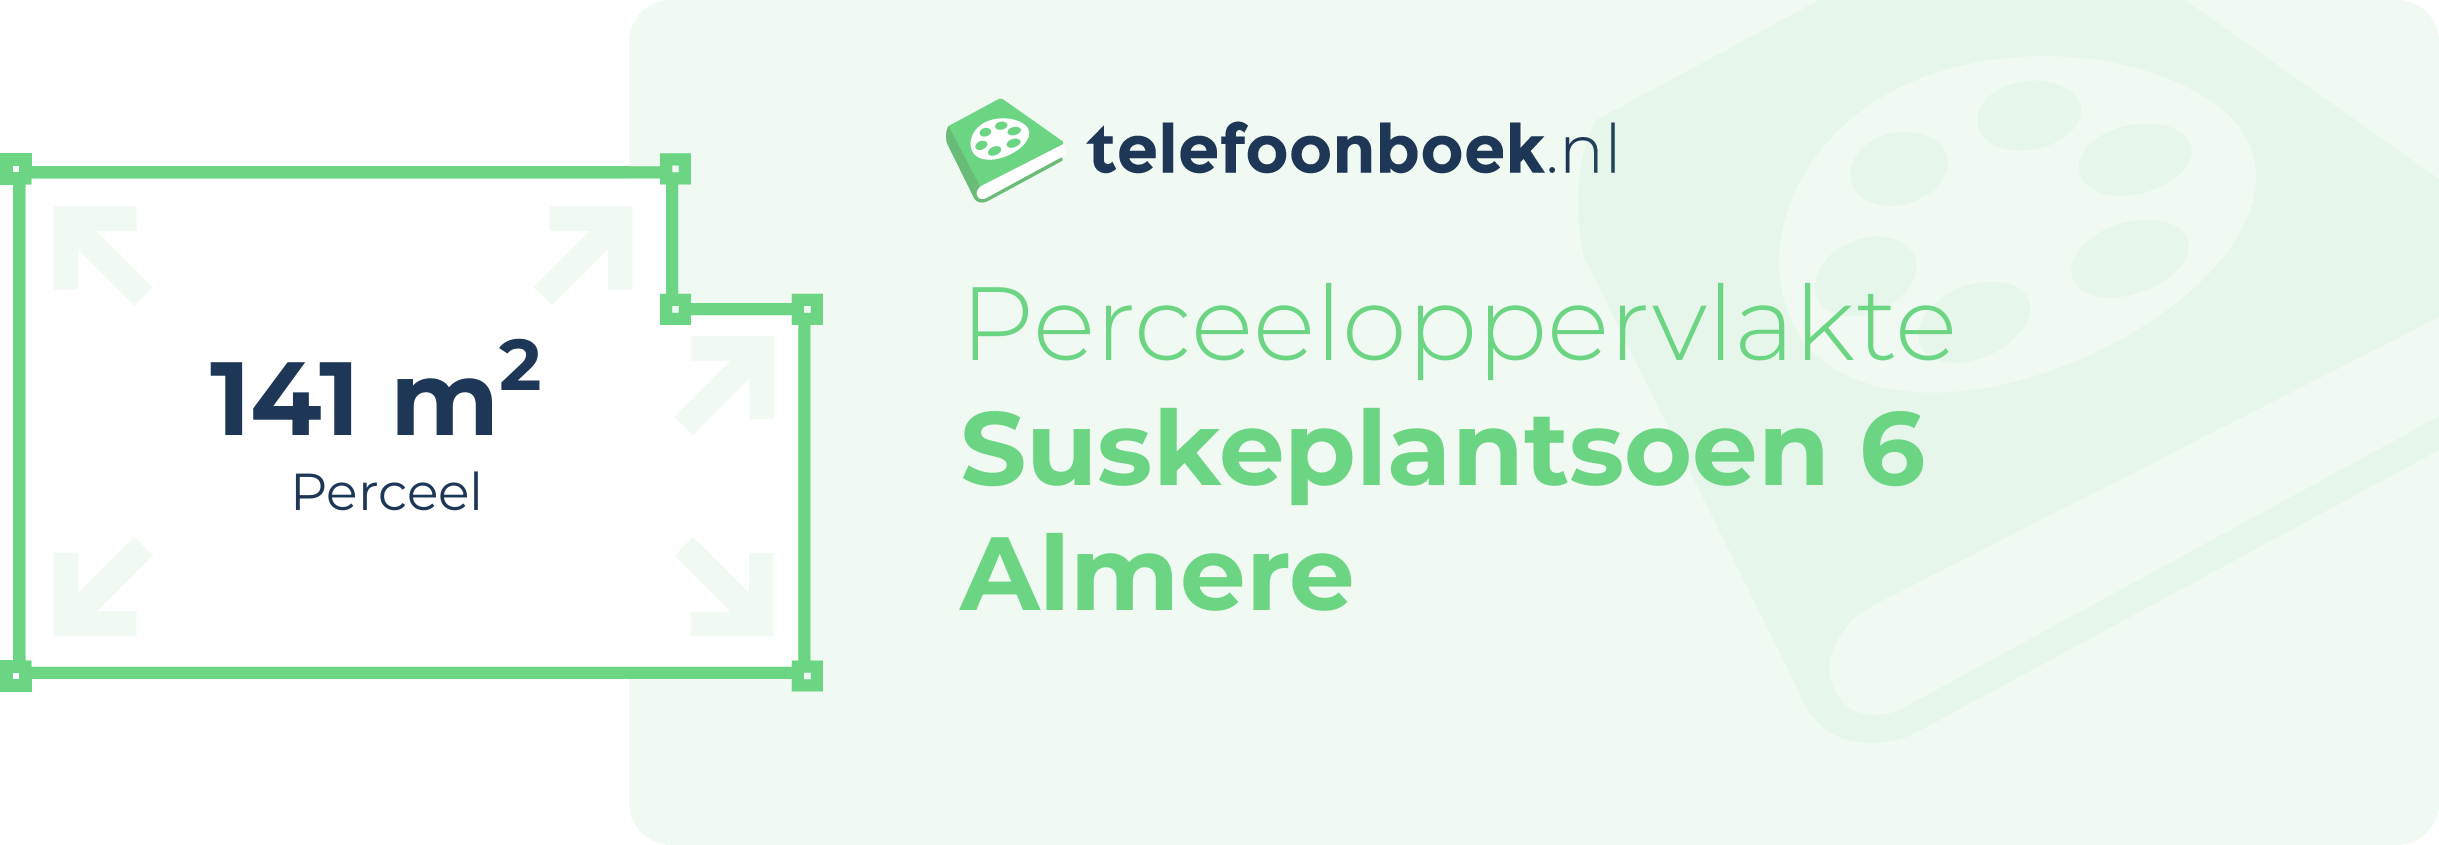 Perceeloppervlakte Suskeplantsoen 6 Almere